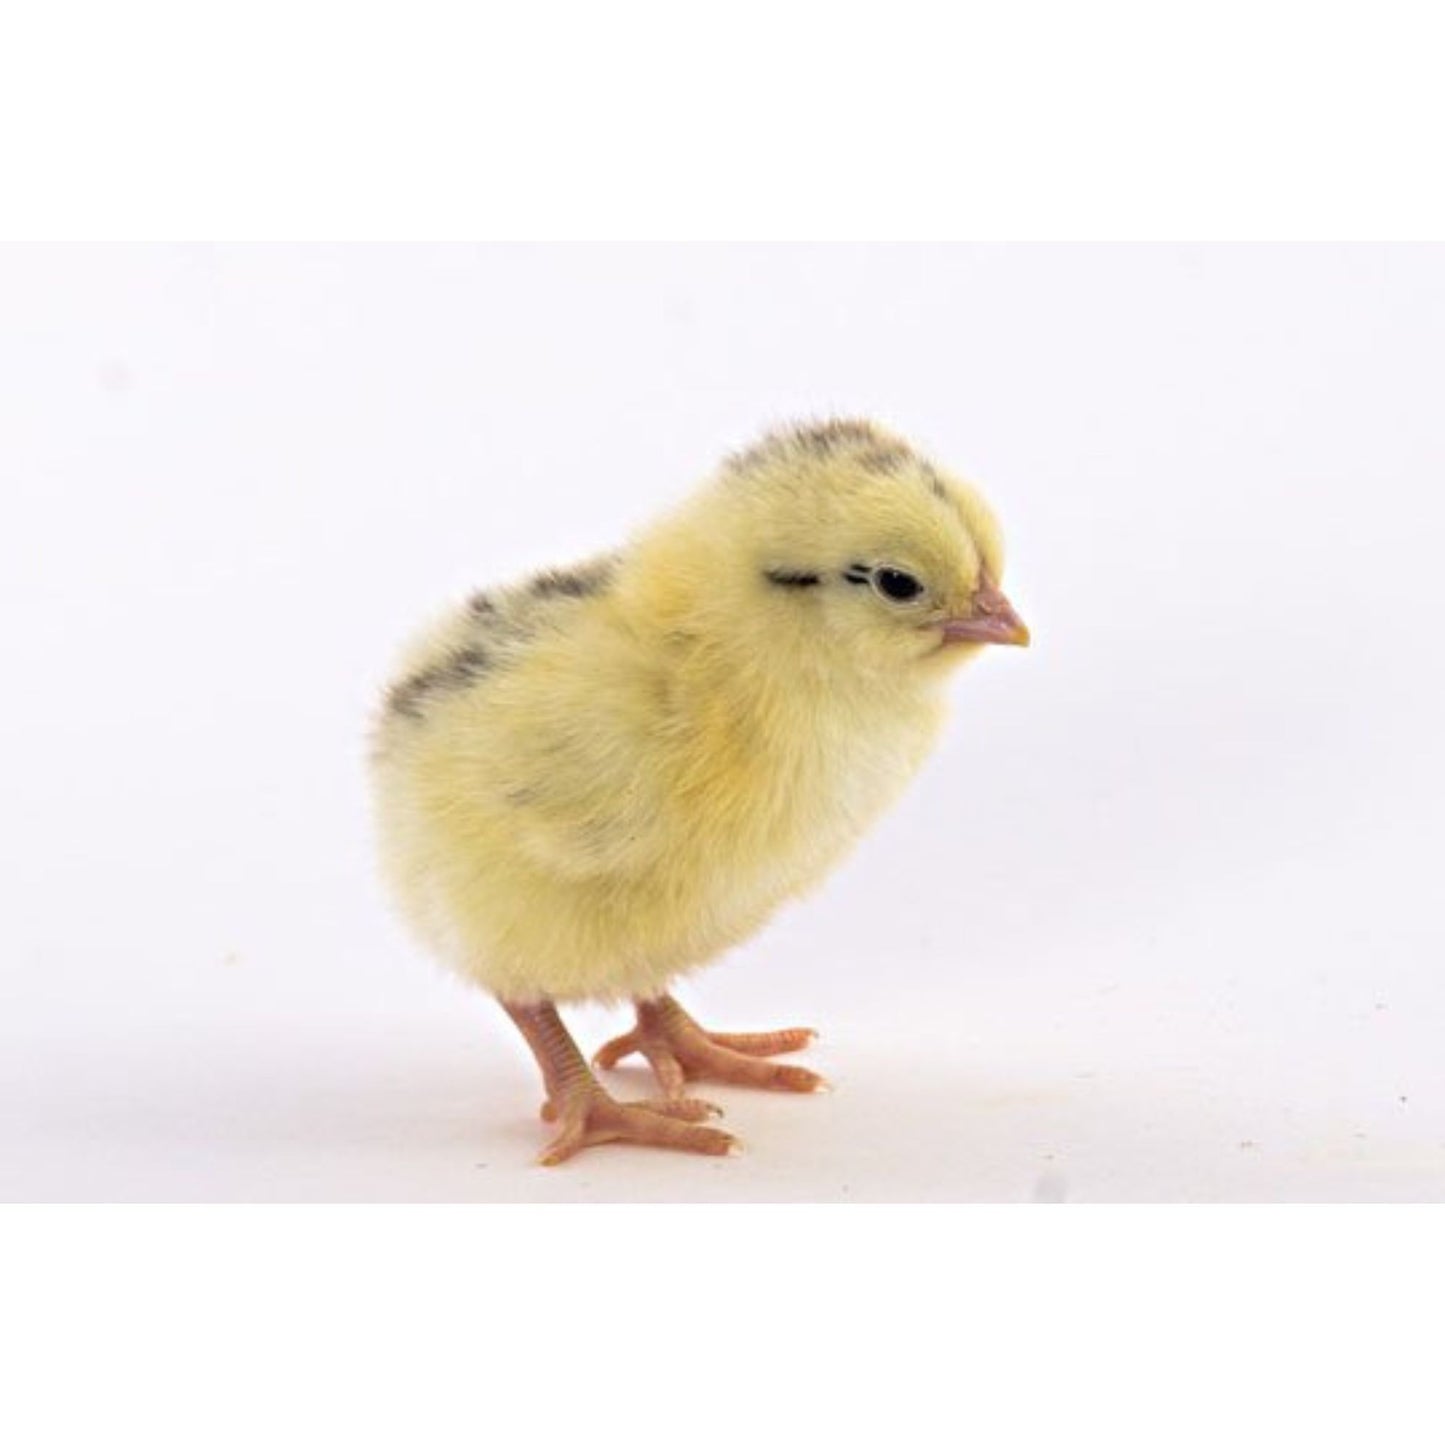 Delaware chick